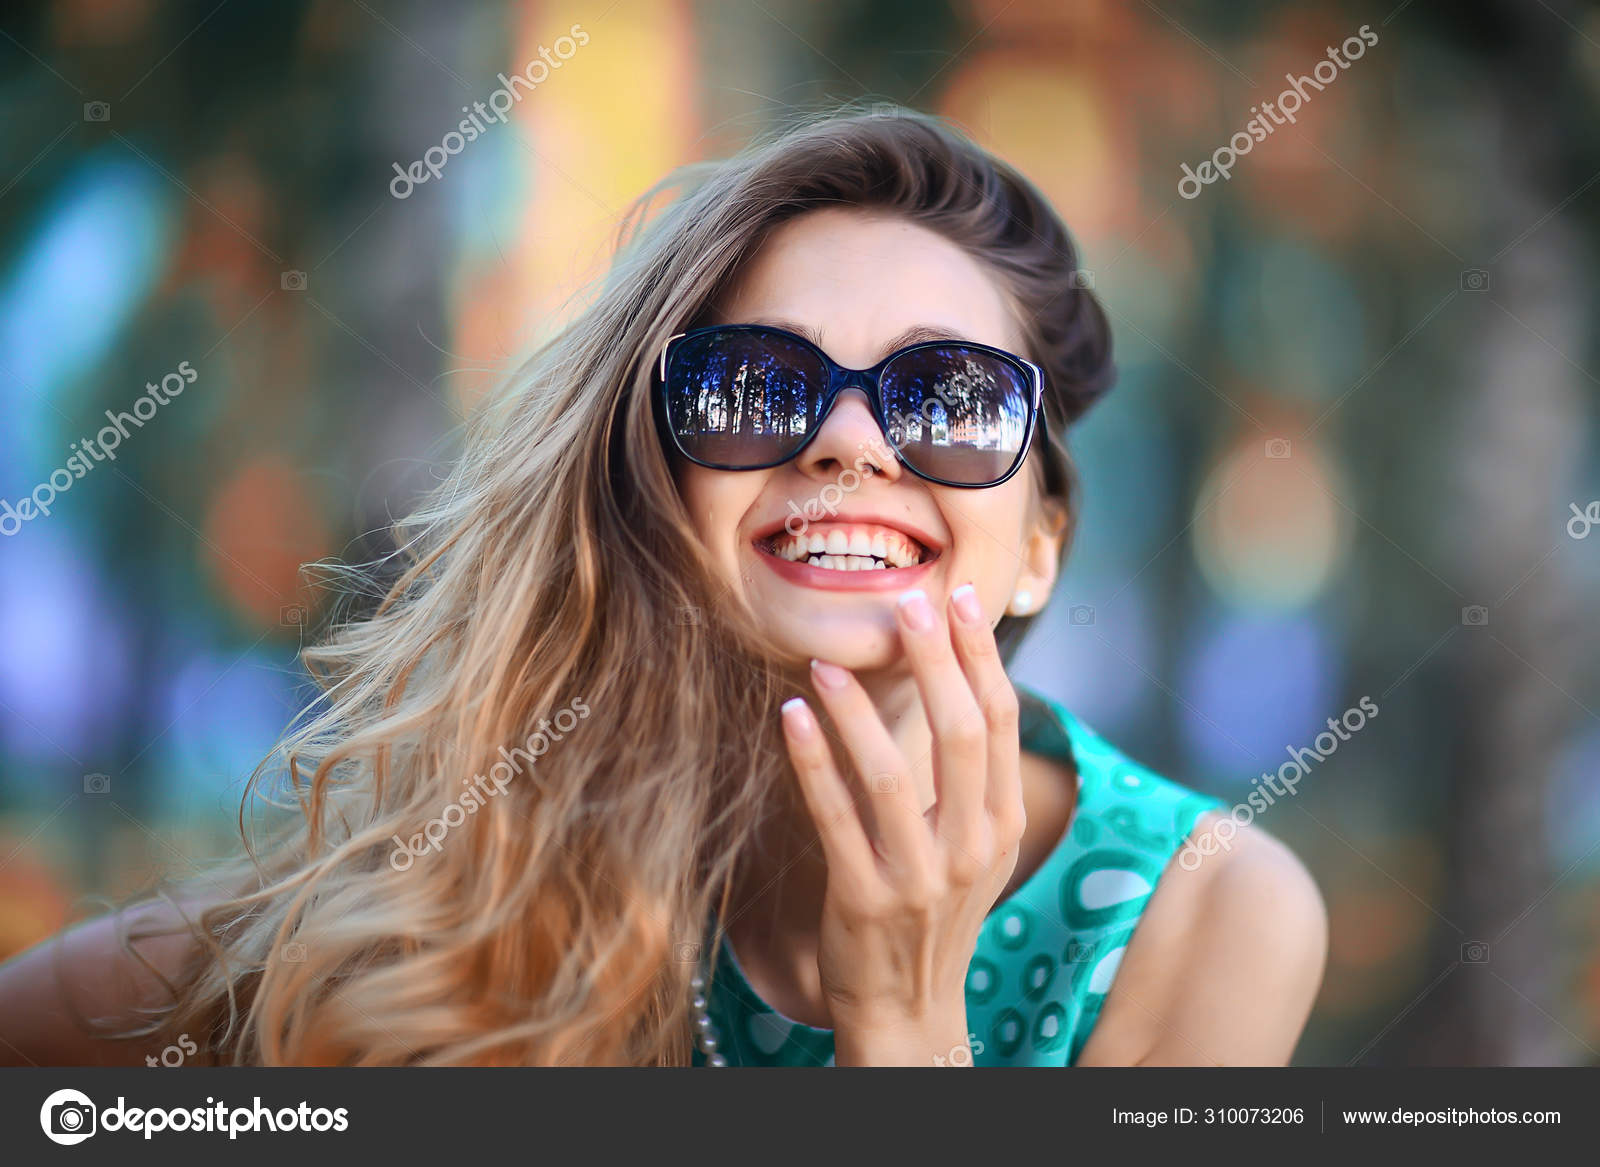 Alegre Rubia Gafas Sol Joven Hermosa Chica Gafas Sol Mujer: fotografía de  stock © xload #310080324